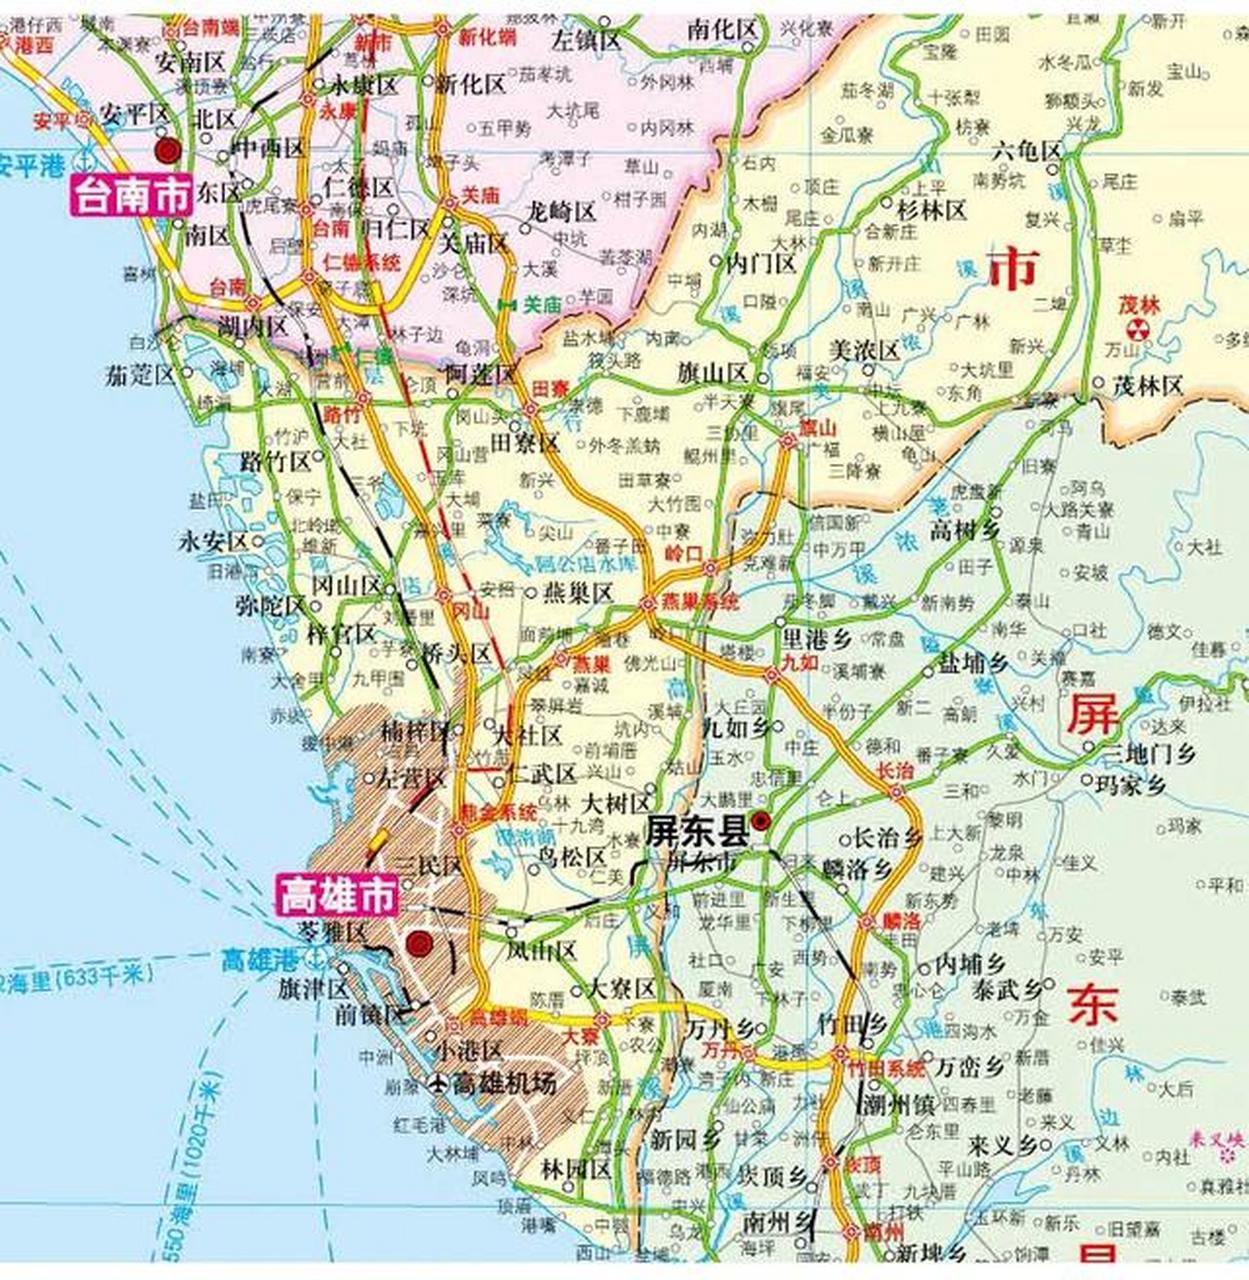 高雄港地理位置图片